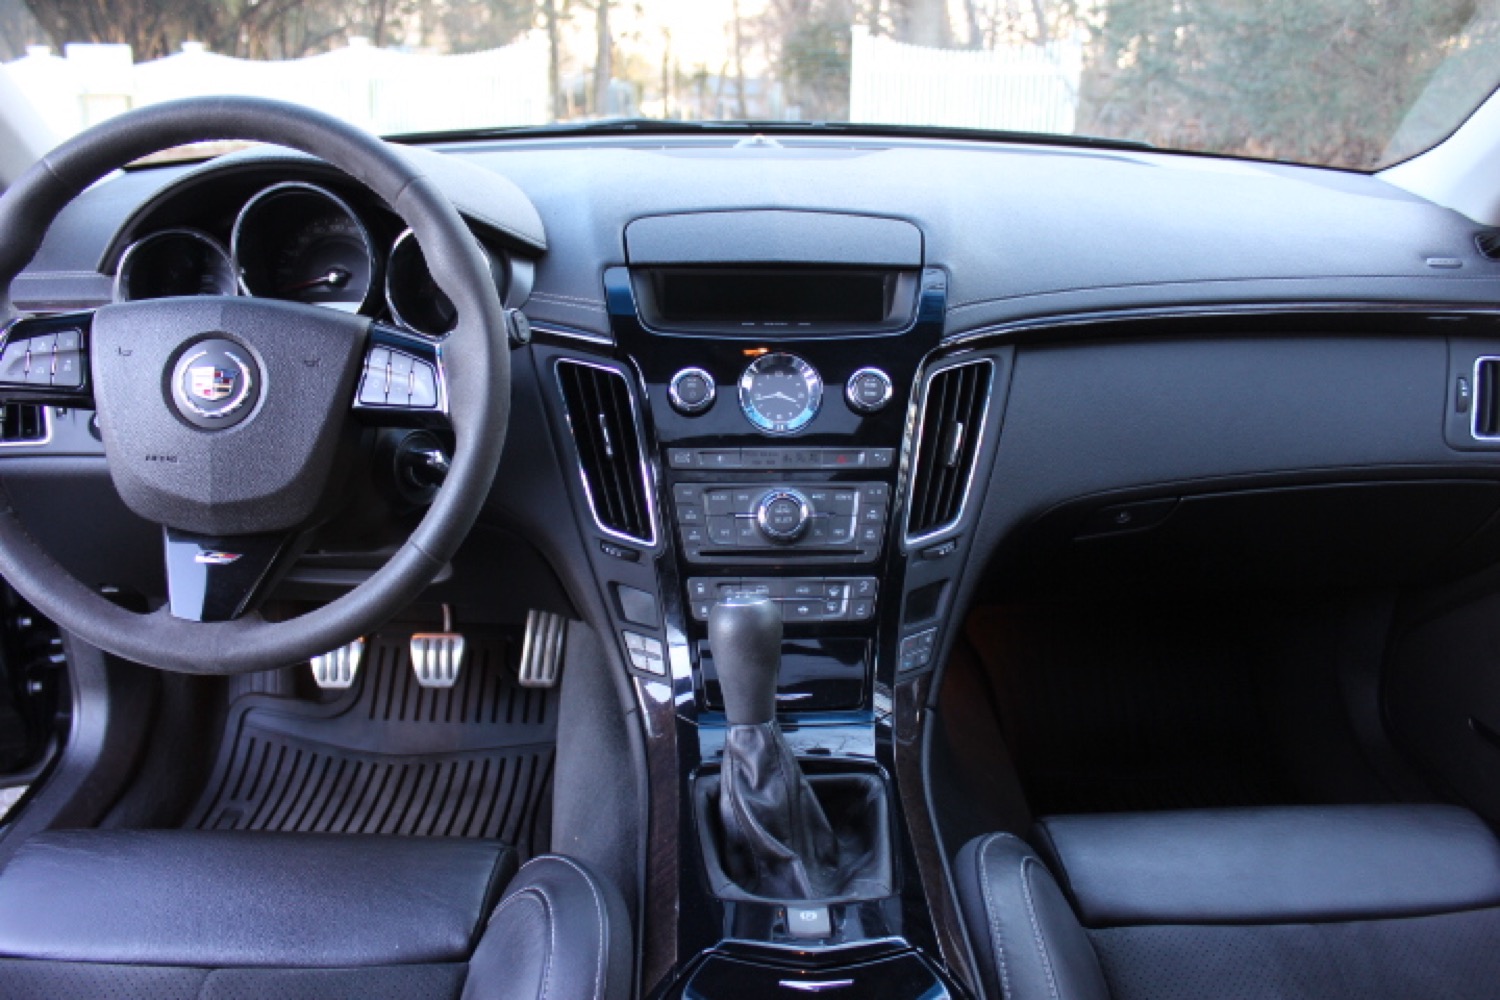 2012 Cadillac CTS-V Wagon Interior 001 | GM Authority